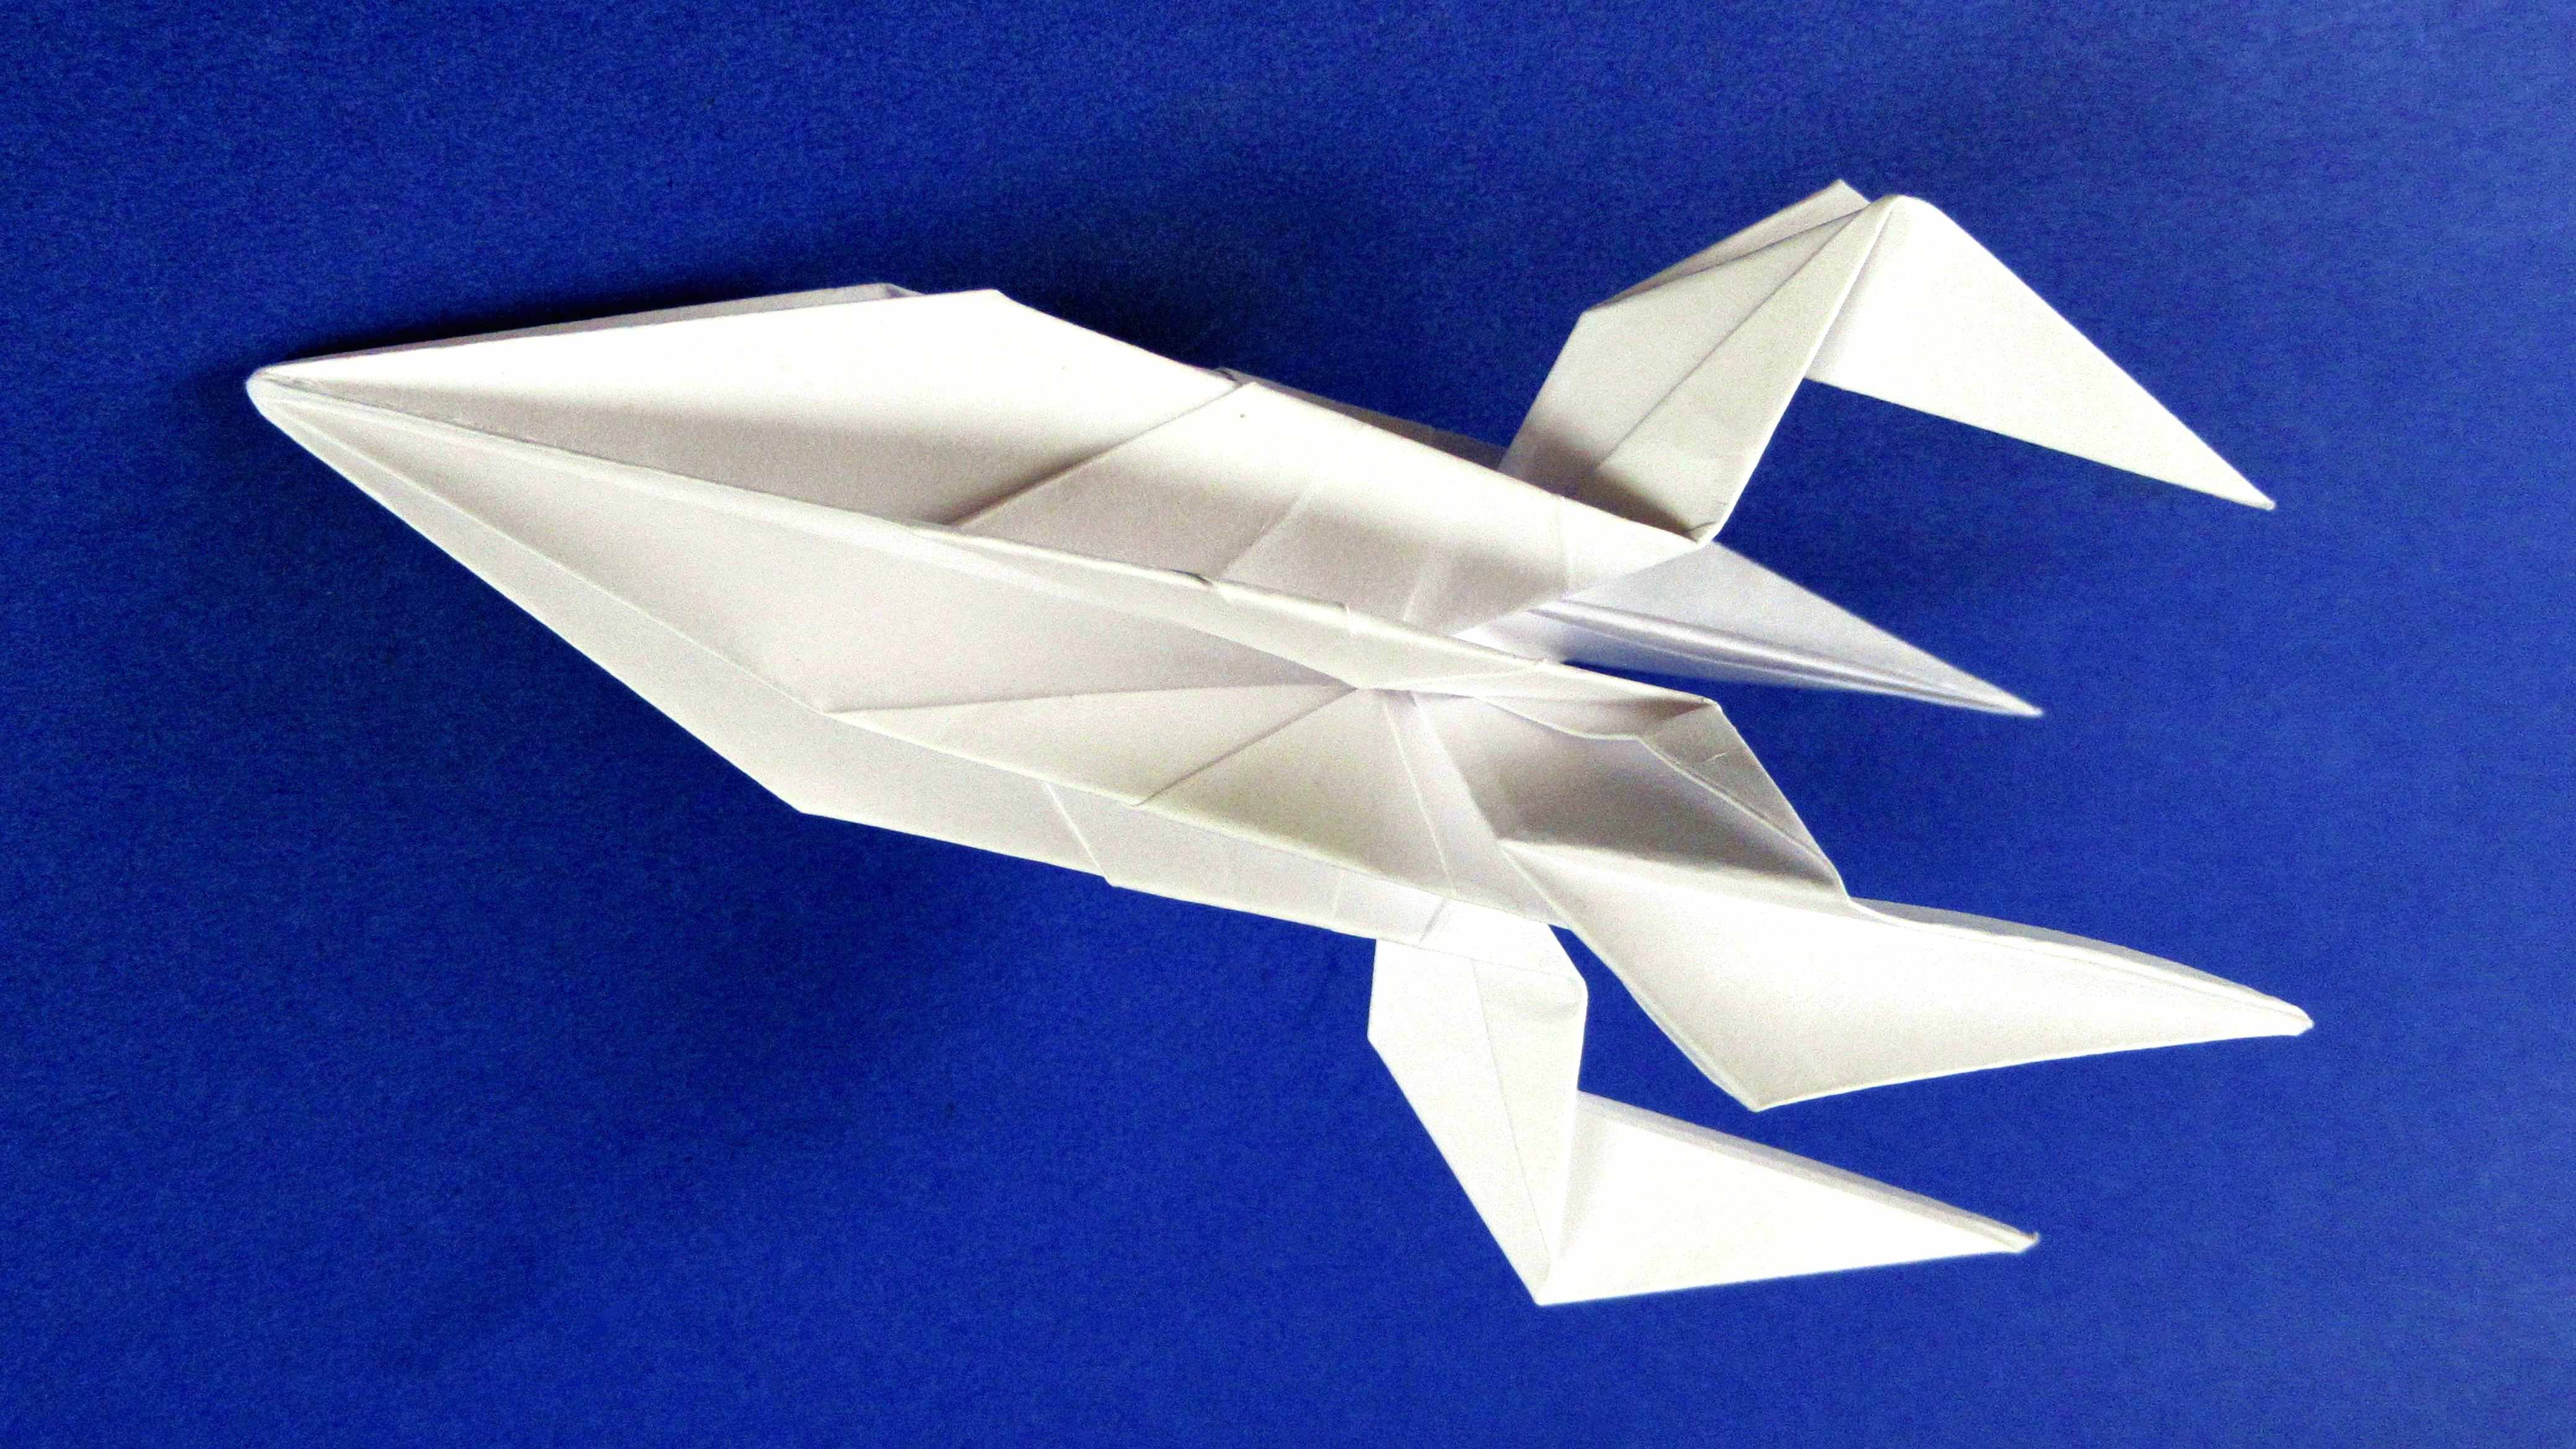 Оригами ко дню космонавтики в детском саду. Оригами ракета. Оригами ко Дню космонавтики. Поделка ко Дню космонавтики оригами. Поделка ракета из бумаги оригами.